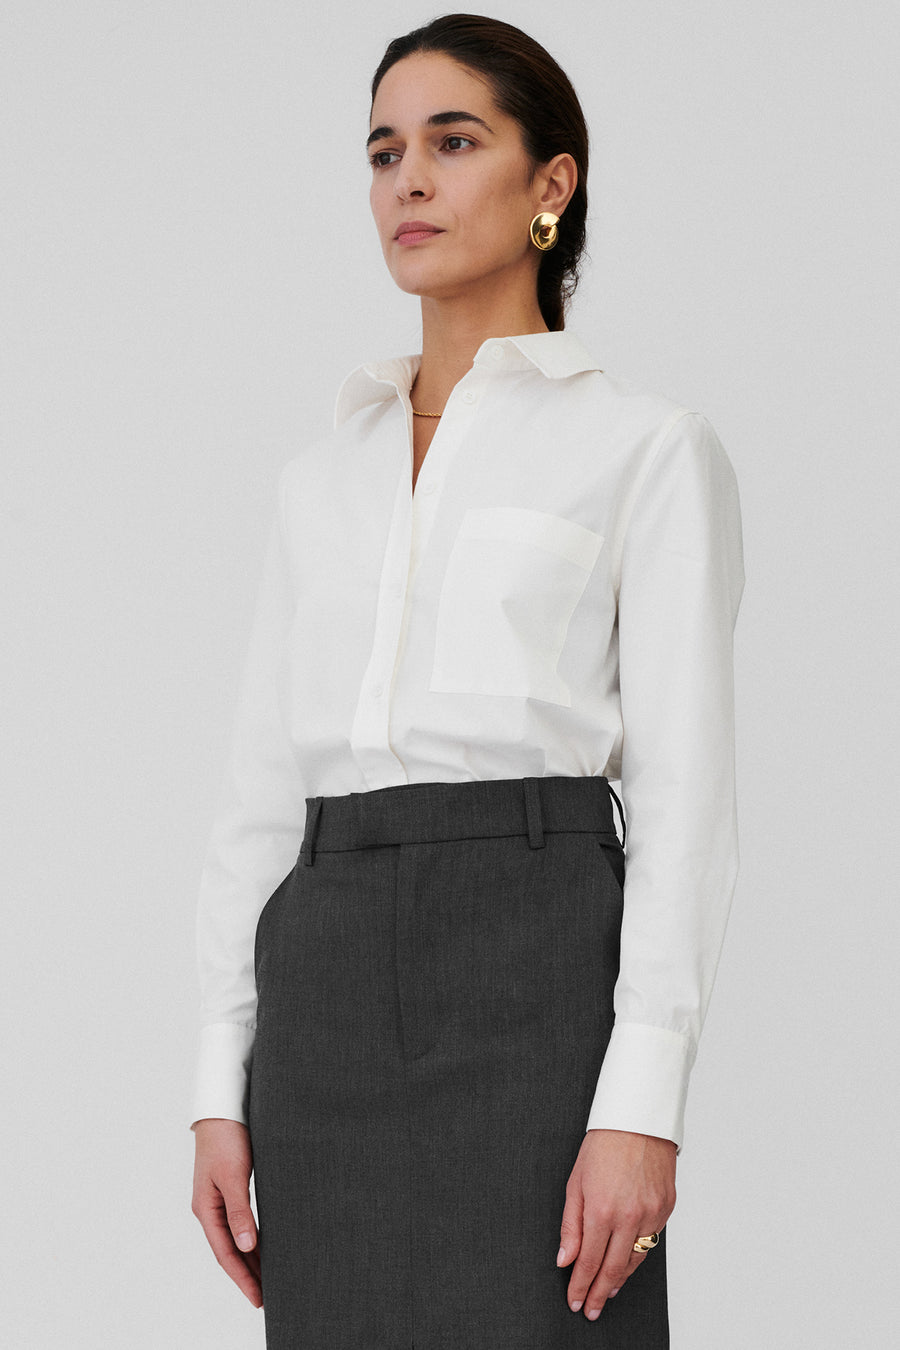 Koszula z bawełny organicznej / 12 / 06 / cream white *spodnica-z-welna-07-04-granite-grey* ?Modelka ma 176cm wzrostu i nosi rozmiar S?